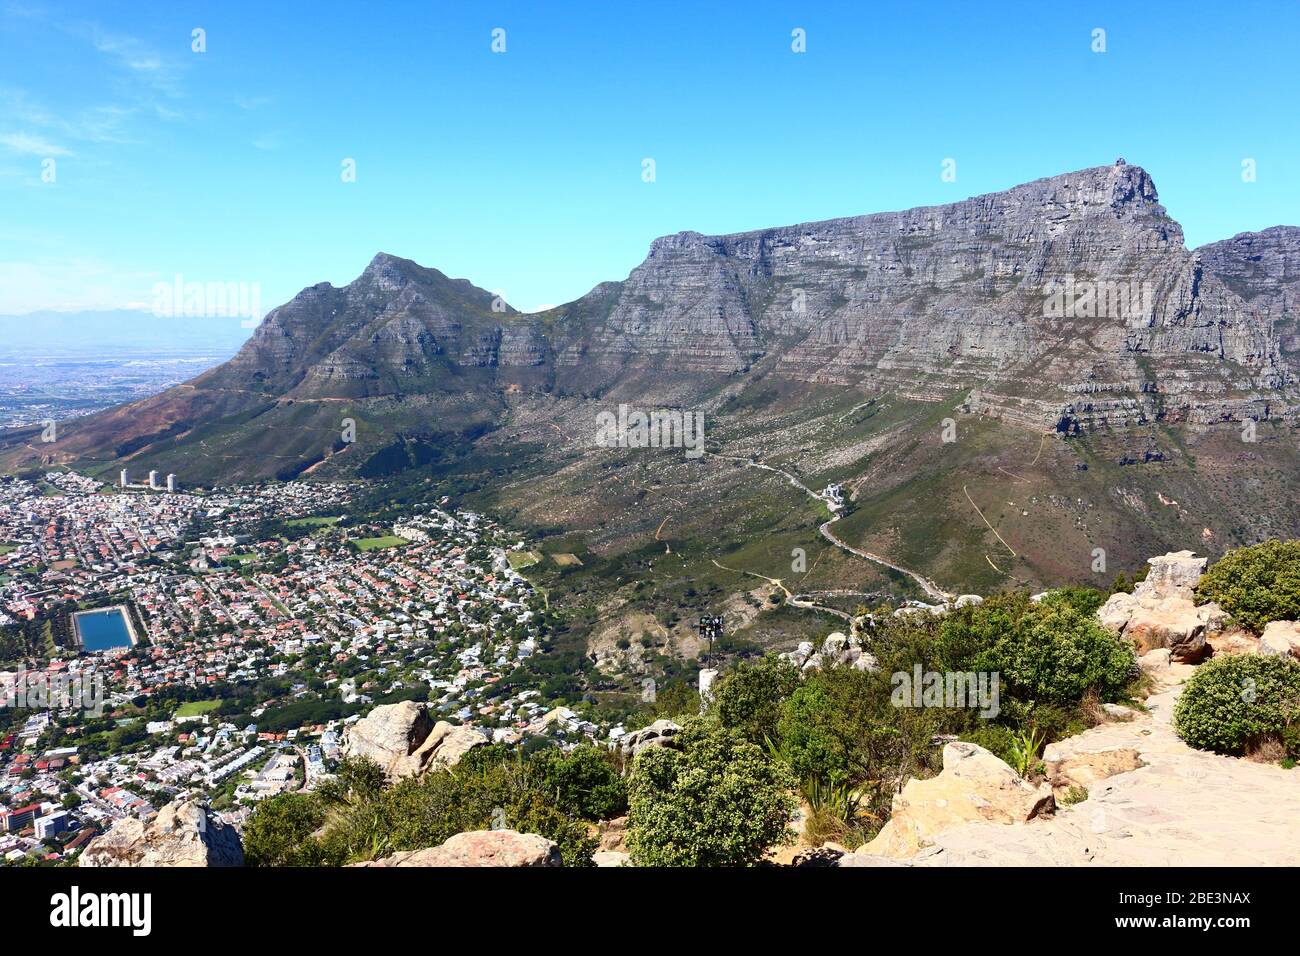 Belle vue depuis Lion's Head en Afrique du Sud. Avec le parc national de Table Mountain sur la droite et le Cap (Oranjezicht). Banque D'Images